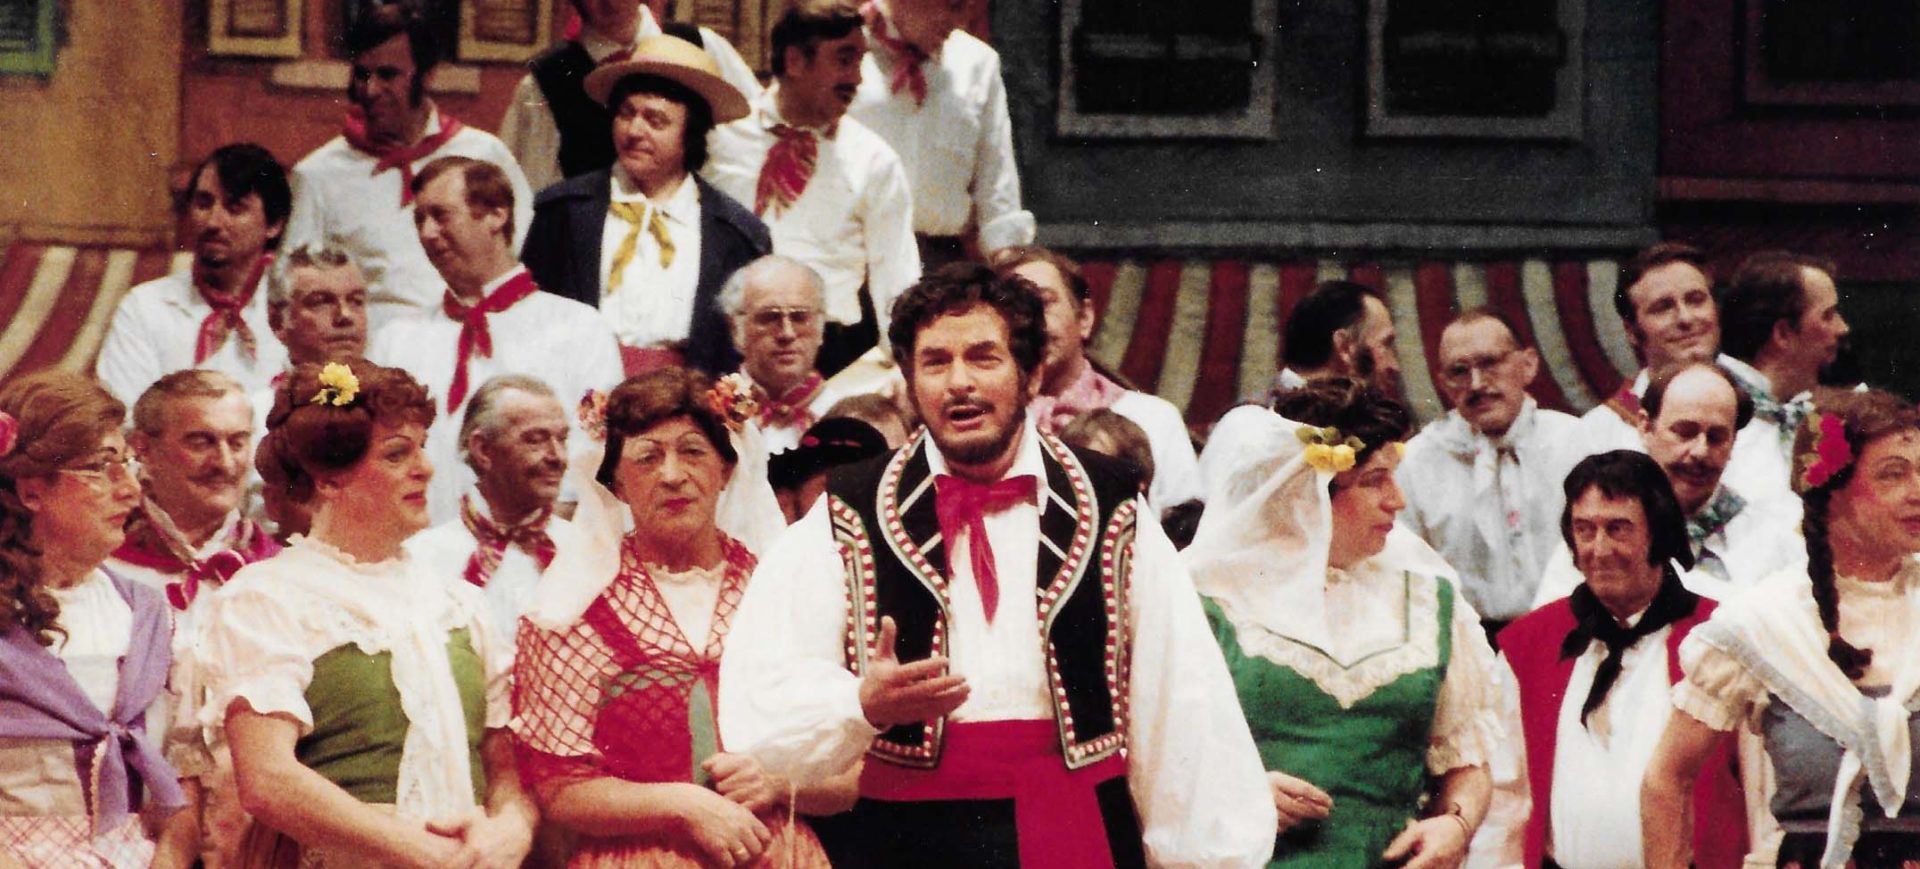 Olympisch För - Divertissementchen 1984 - Solist und Chor in farbenfrohen Kostümen